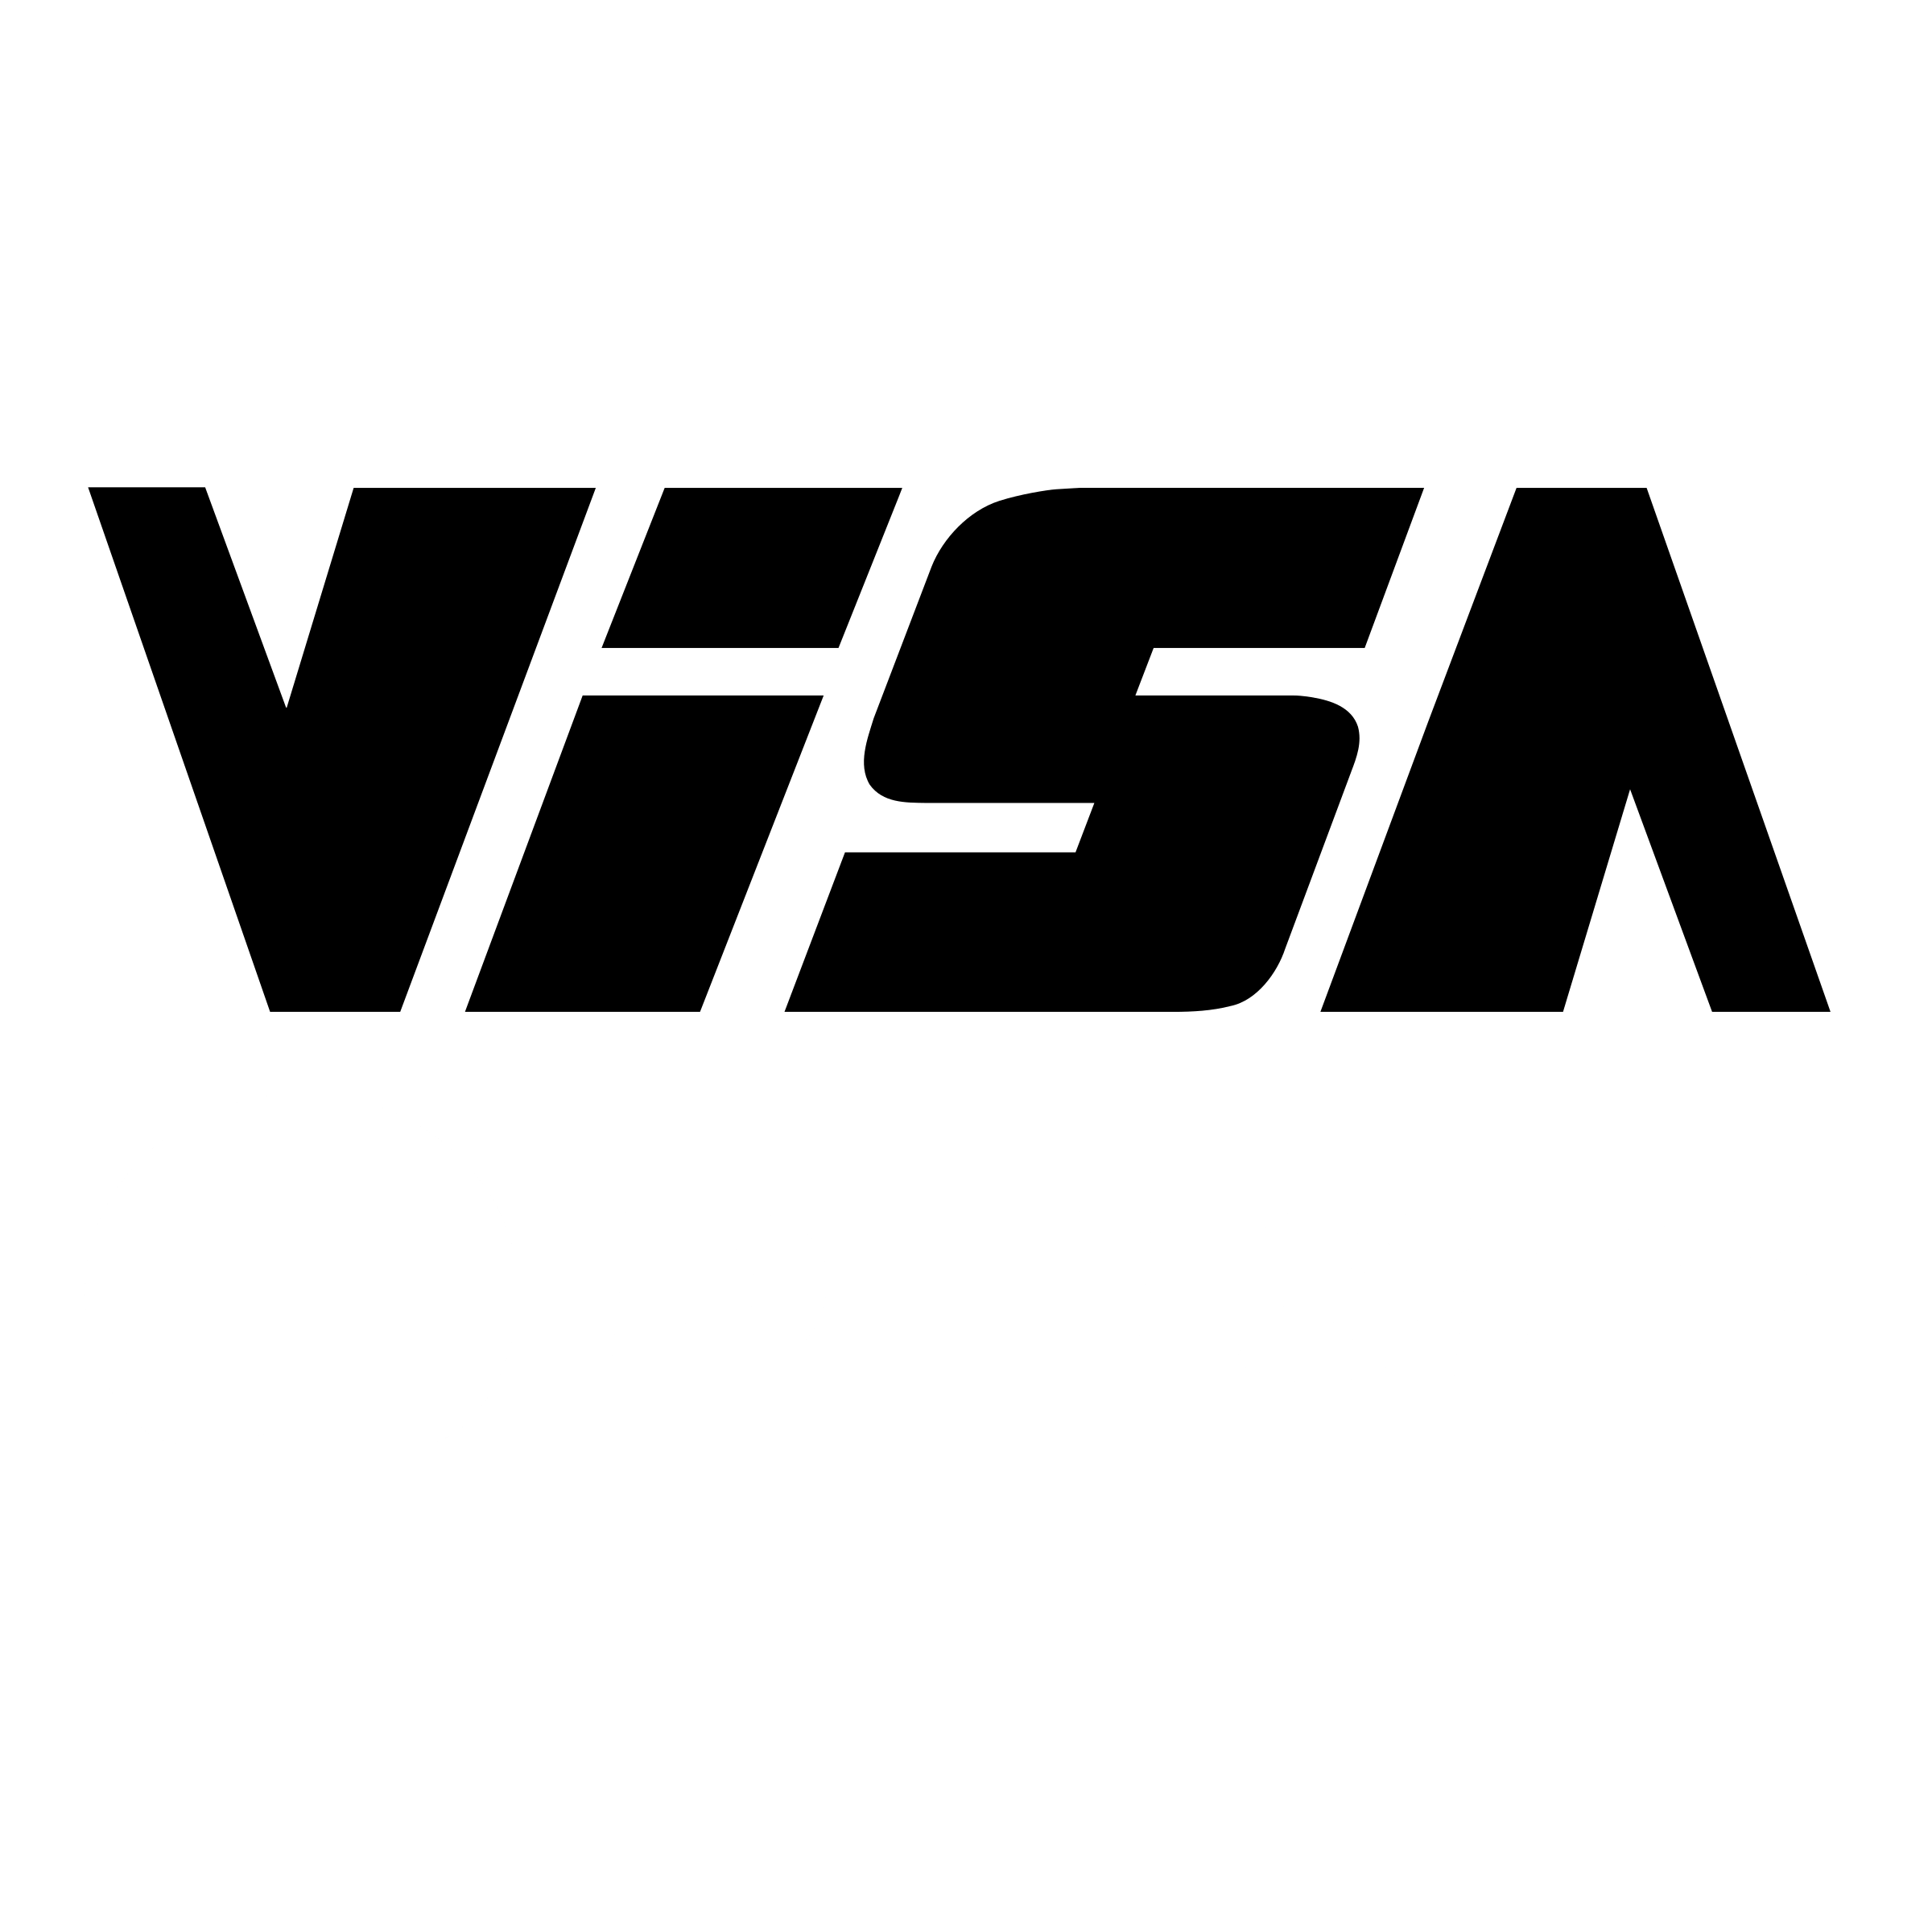 Delsey Logo - Visa Delsey Logo PNG Transparent & SVG Vector - Freebie Supply